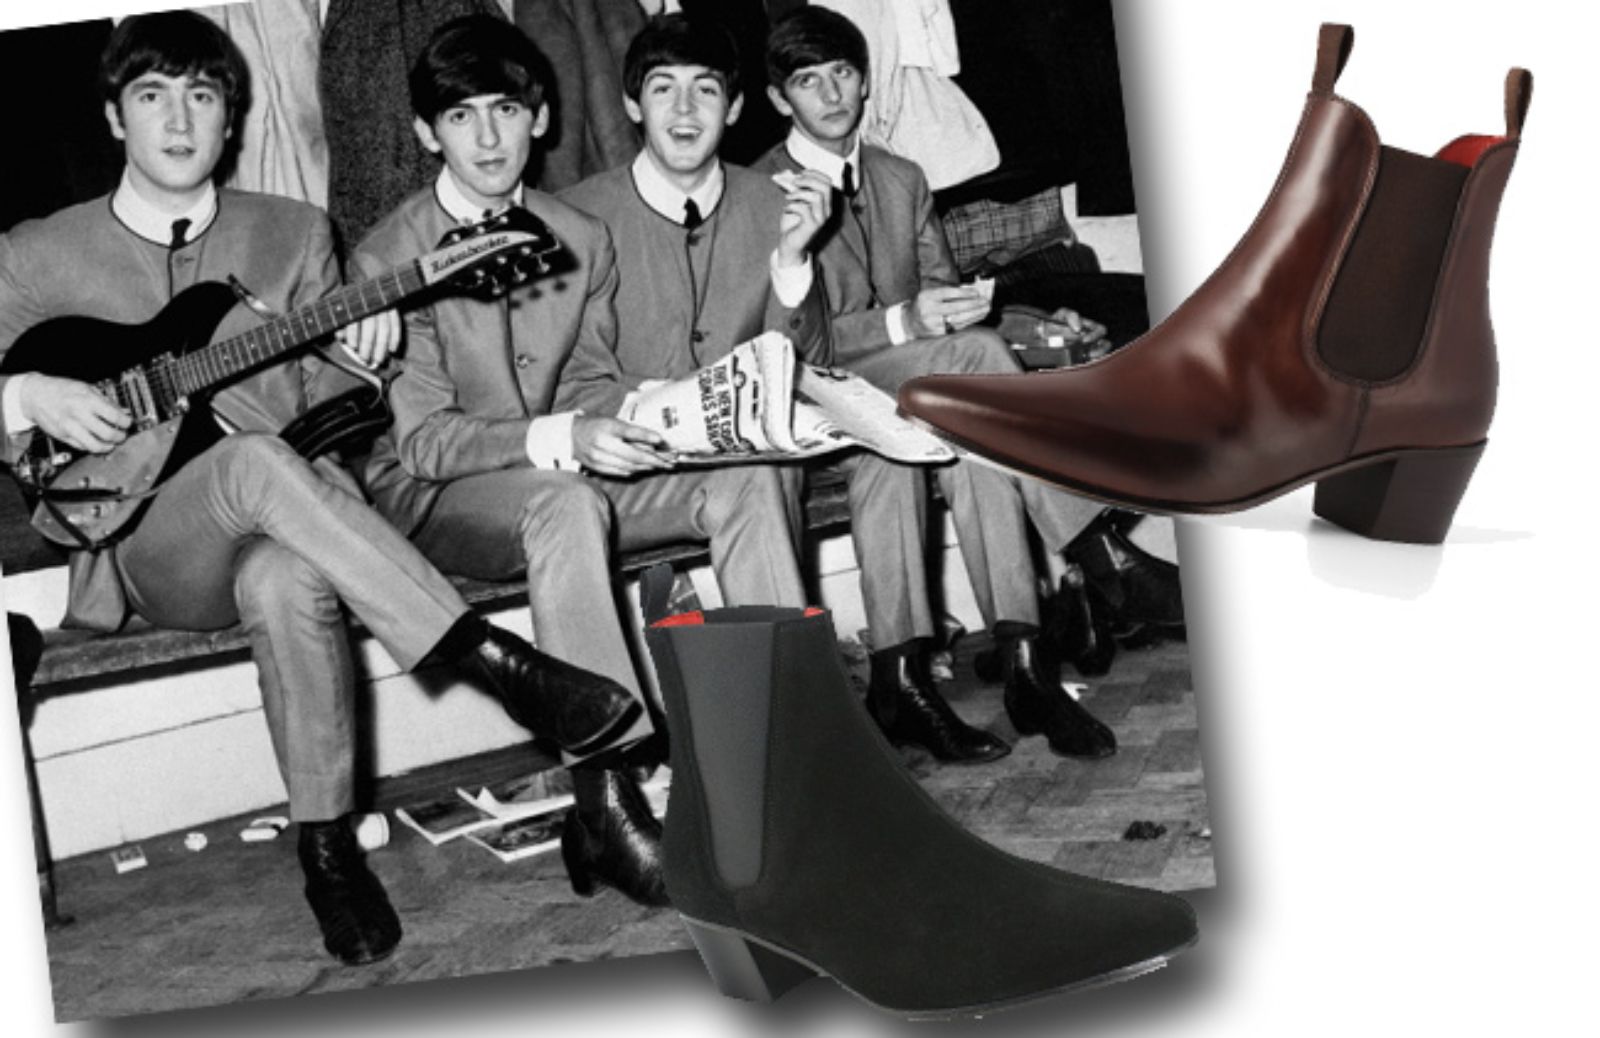 Come abbinare gli stivaletti Beatles o Beatles boots